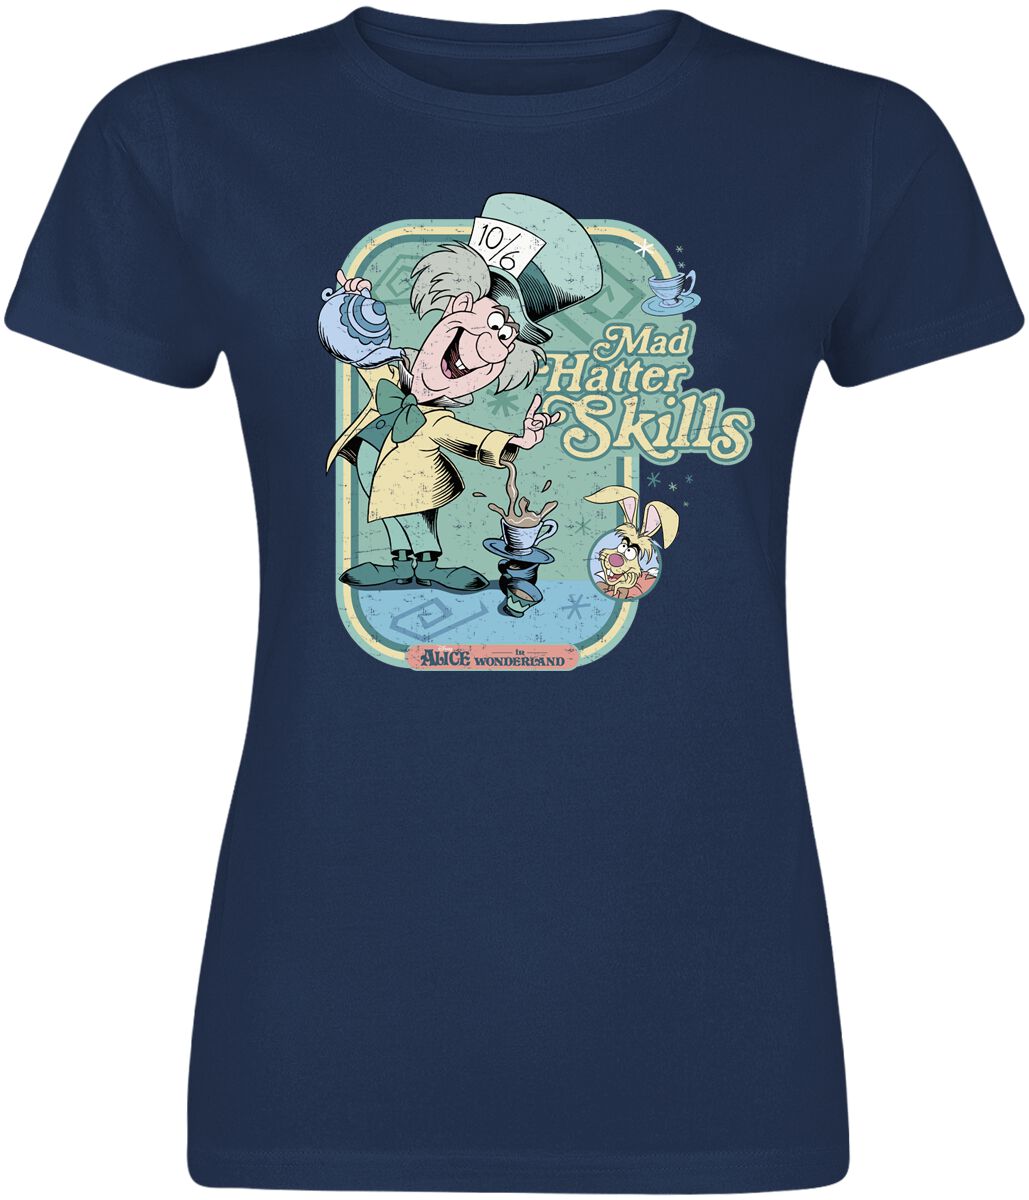 Alice im Wunderland - Disney T-Shirt - Mad hatter Skills - S bis XXL - für Damen - Größe M - navy  - EMP exklusives Merchandise! von Alice im Wunderland